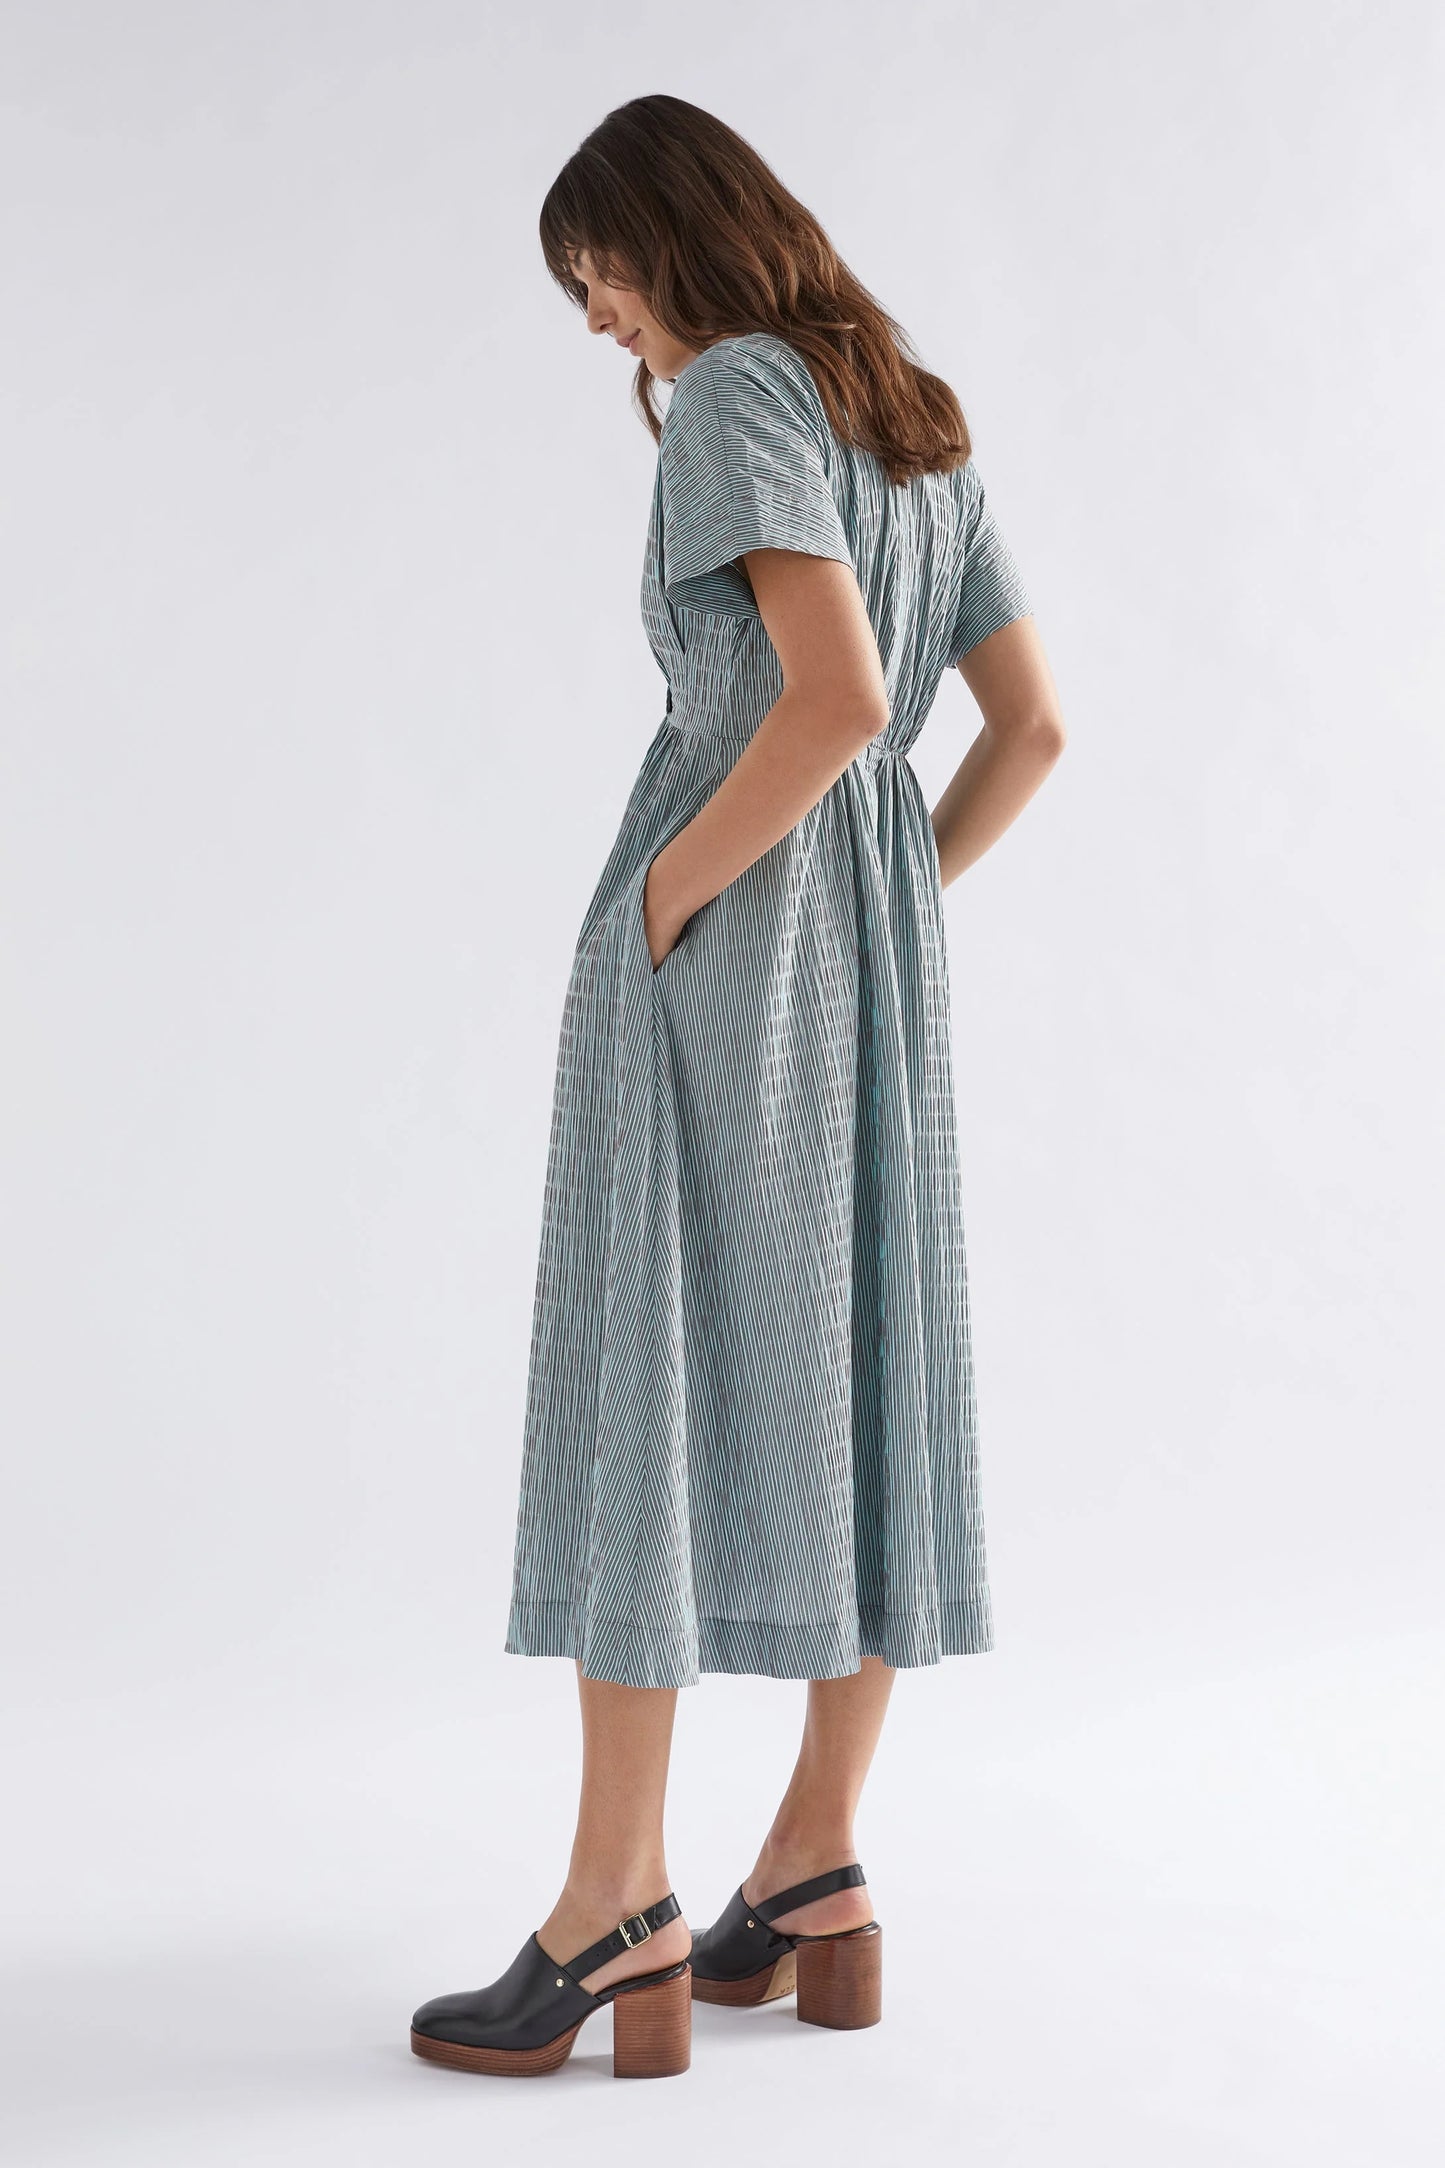 Bekk Long Dress - Choc Mint Stripe